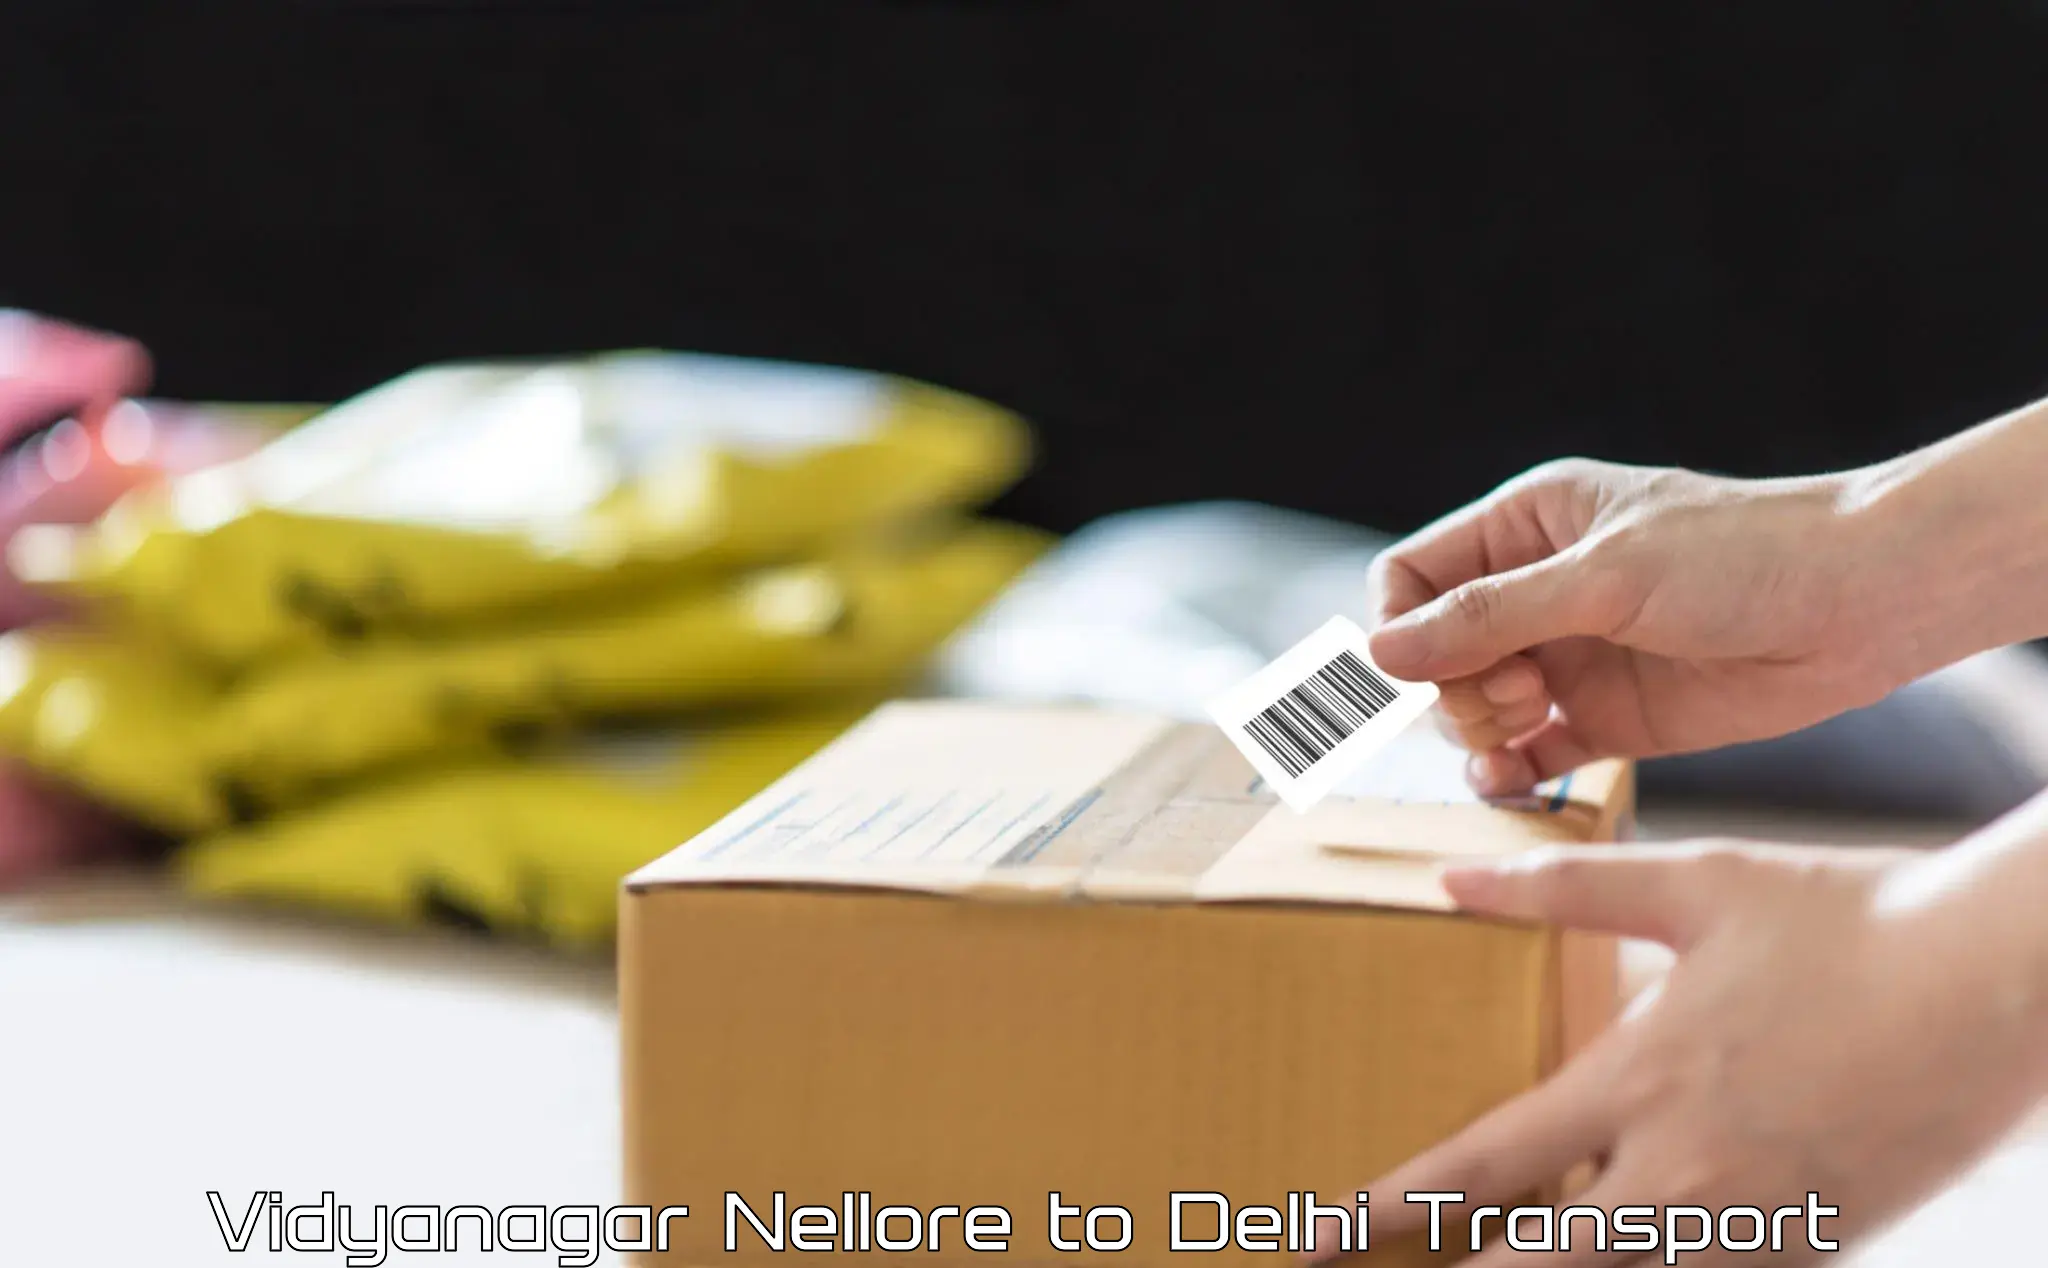 India truck logistics services Vidyanagar Nellore to Delhi